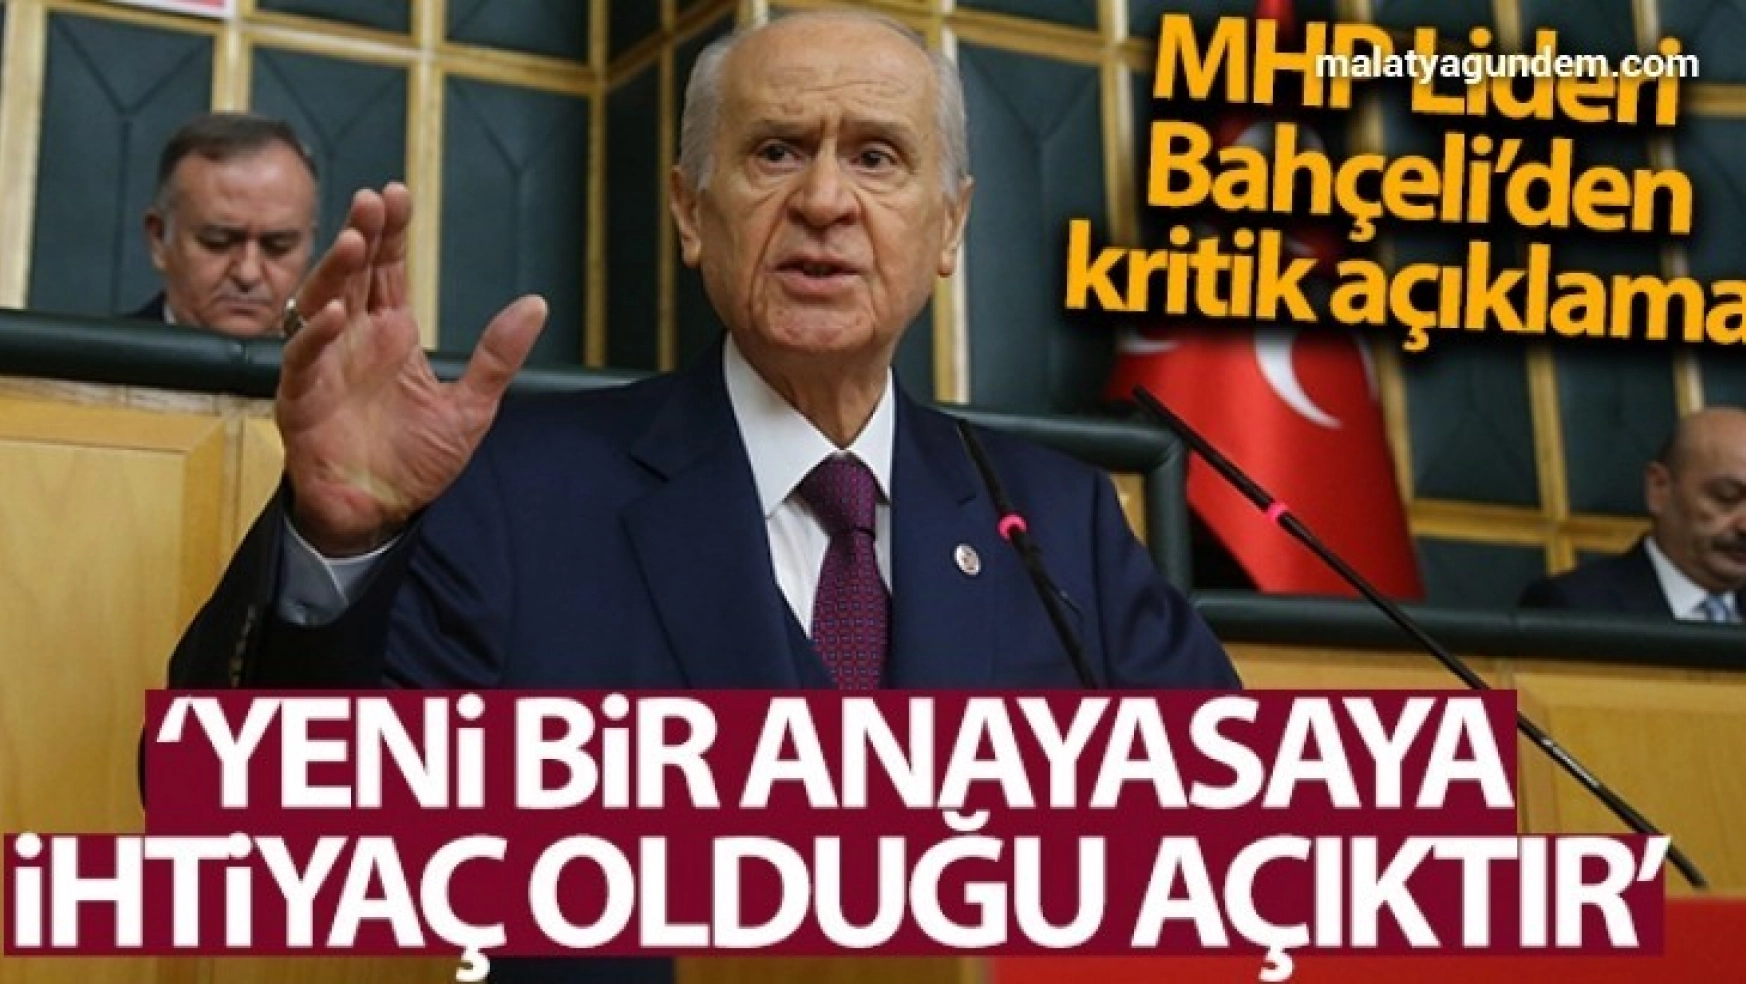 MHP Genel Başkanı Bahçeli: 'Türkiye'nin yeni bir anayasaya ihtiyacı olduğu açıktır'